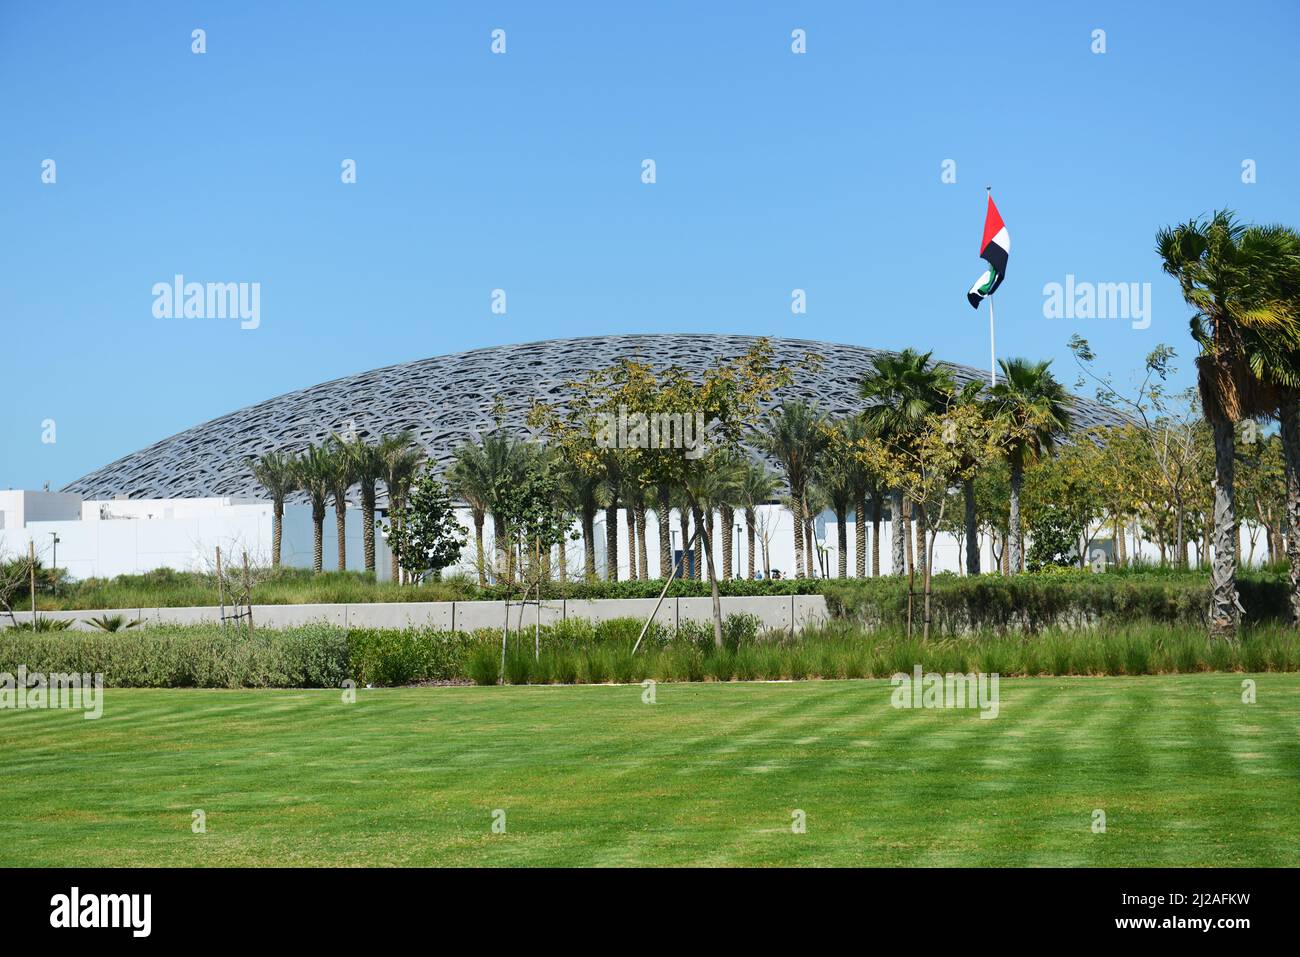 Das wunderschöne Museum Louvre Abu Dhabi auf der Insel Saadiyat in Abu Dhabi, Vereinigte Arabische Emirate. Stockfoto